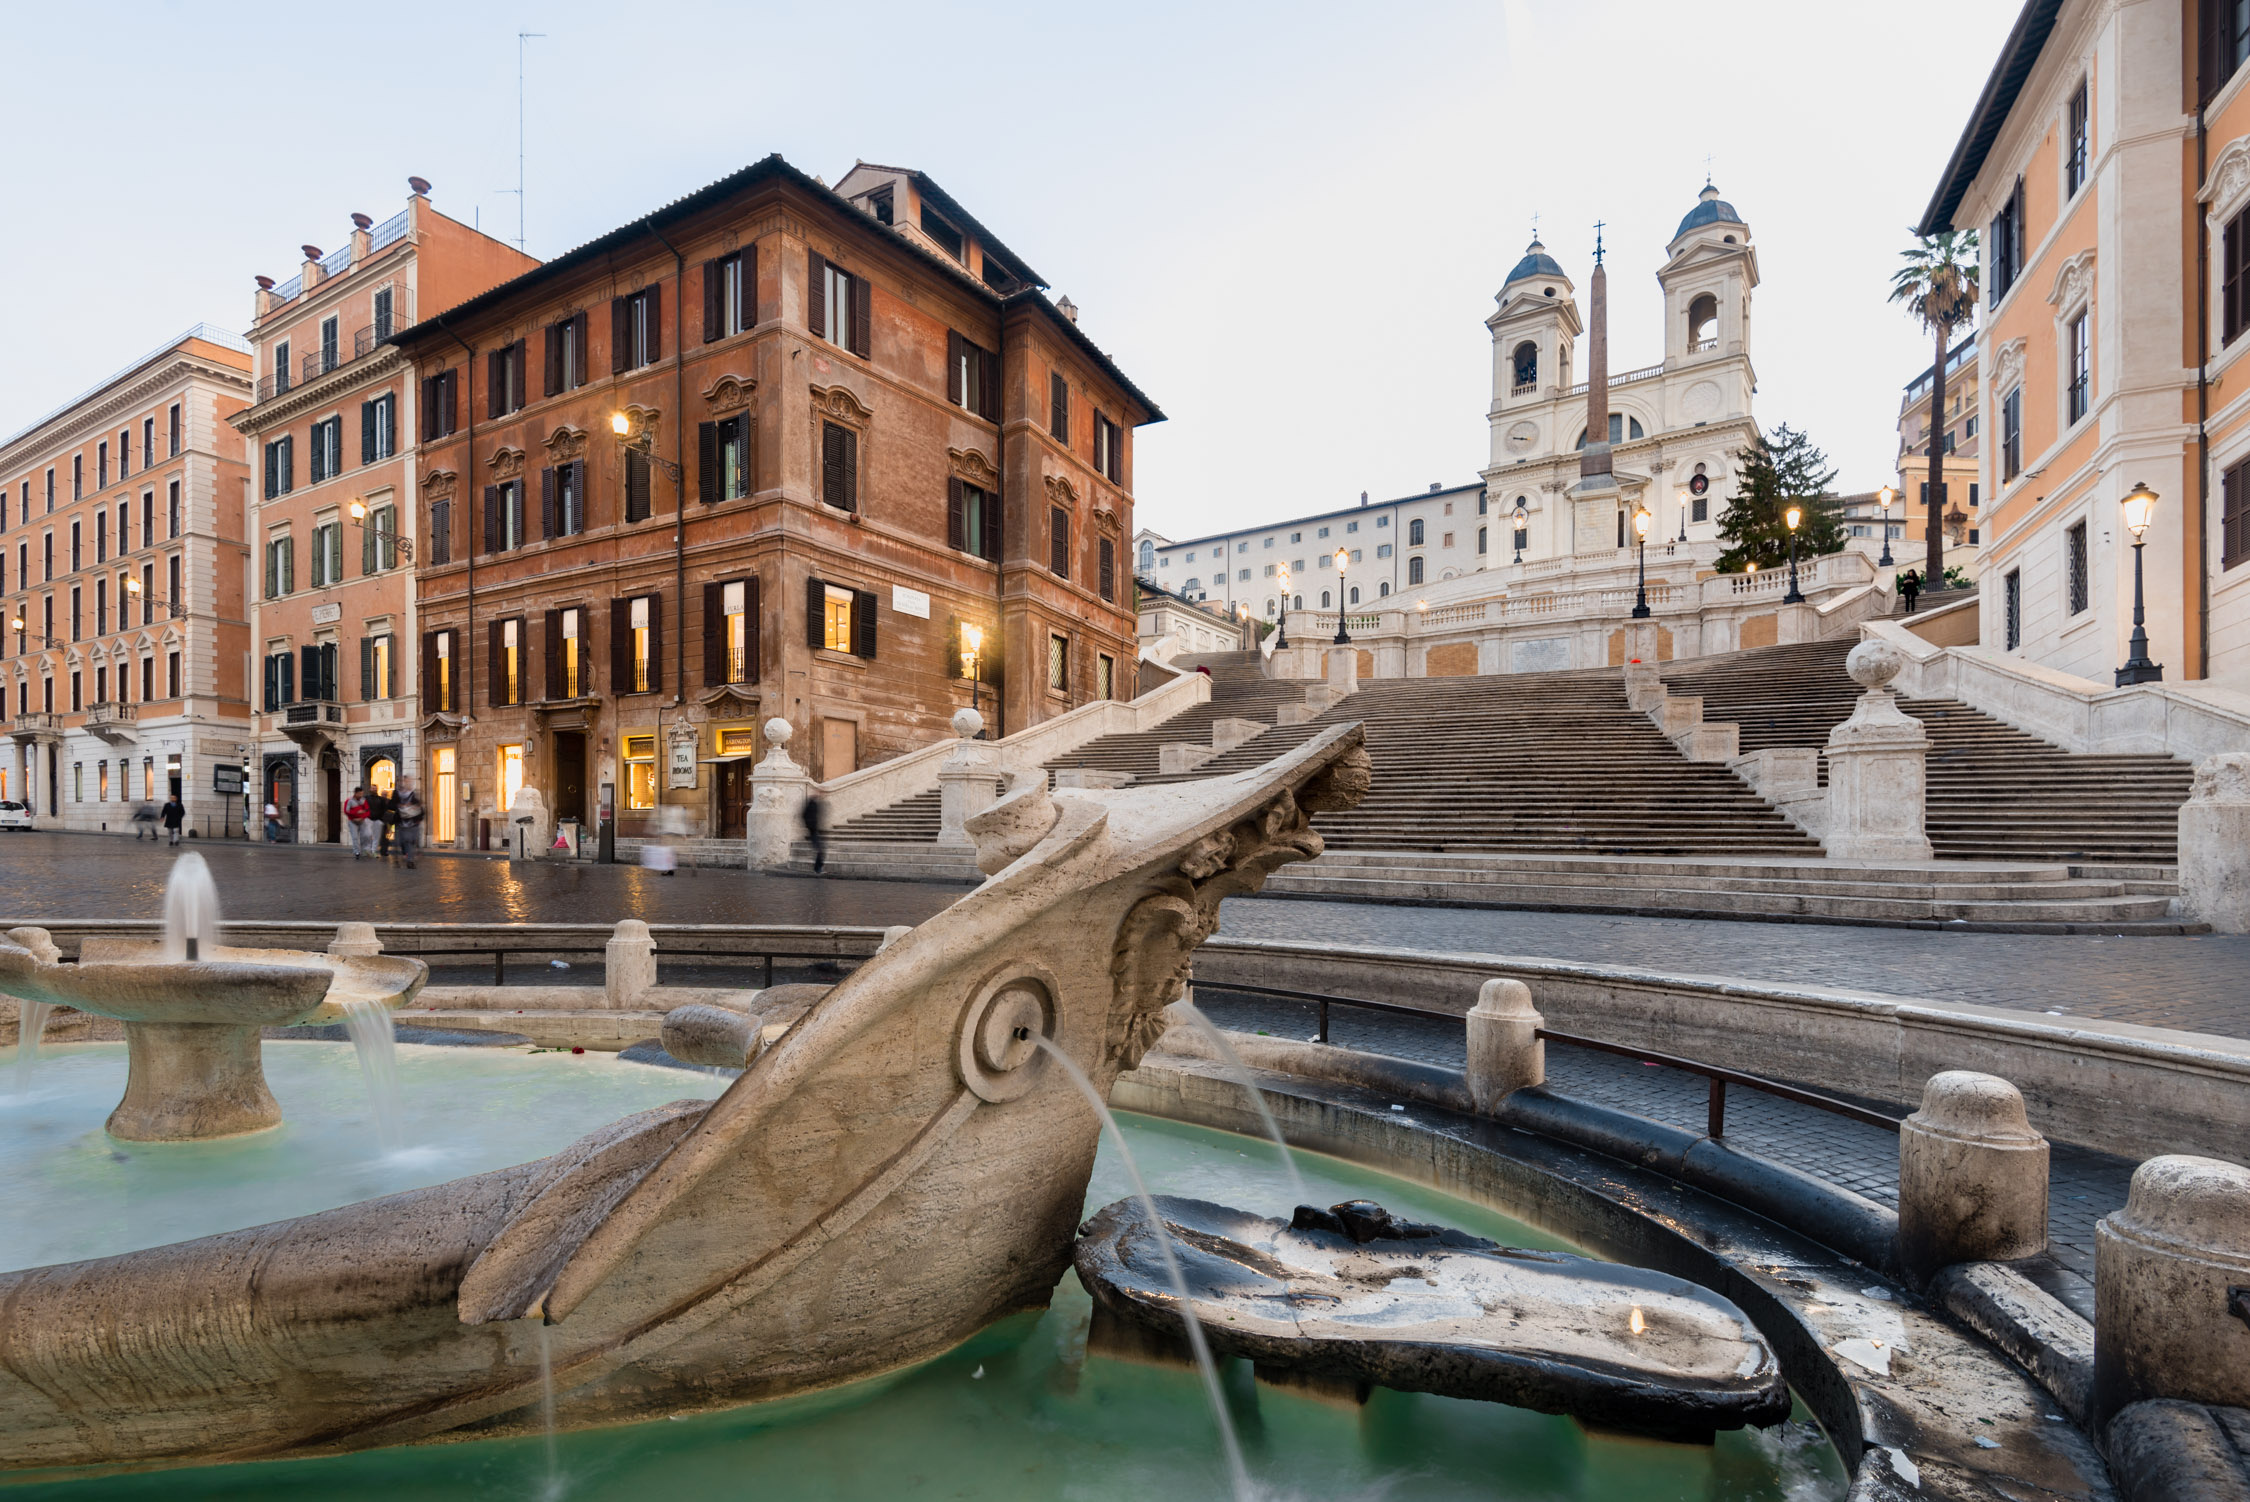 Barcaccia Fountain, Travels, Crossing Condotti, Stylish boutique guesthouse, 2250x1510 HD Desktop